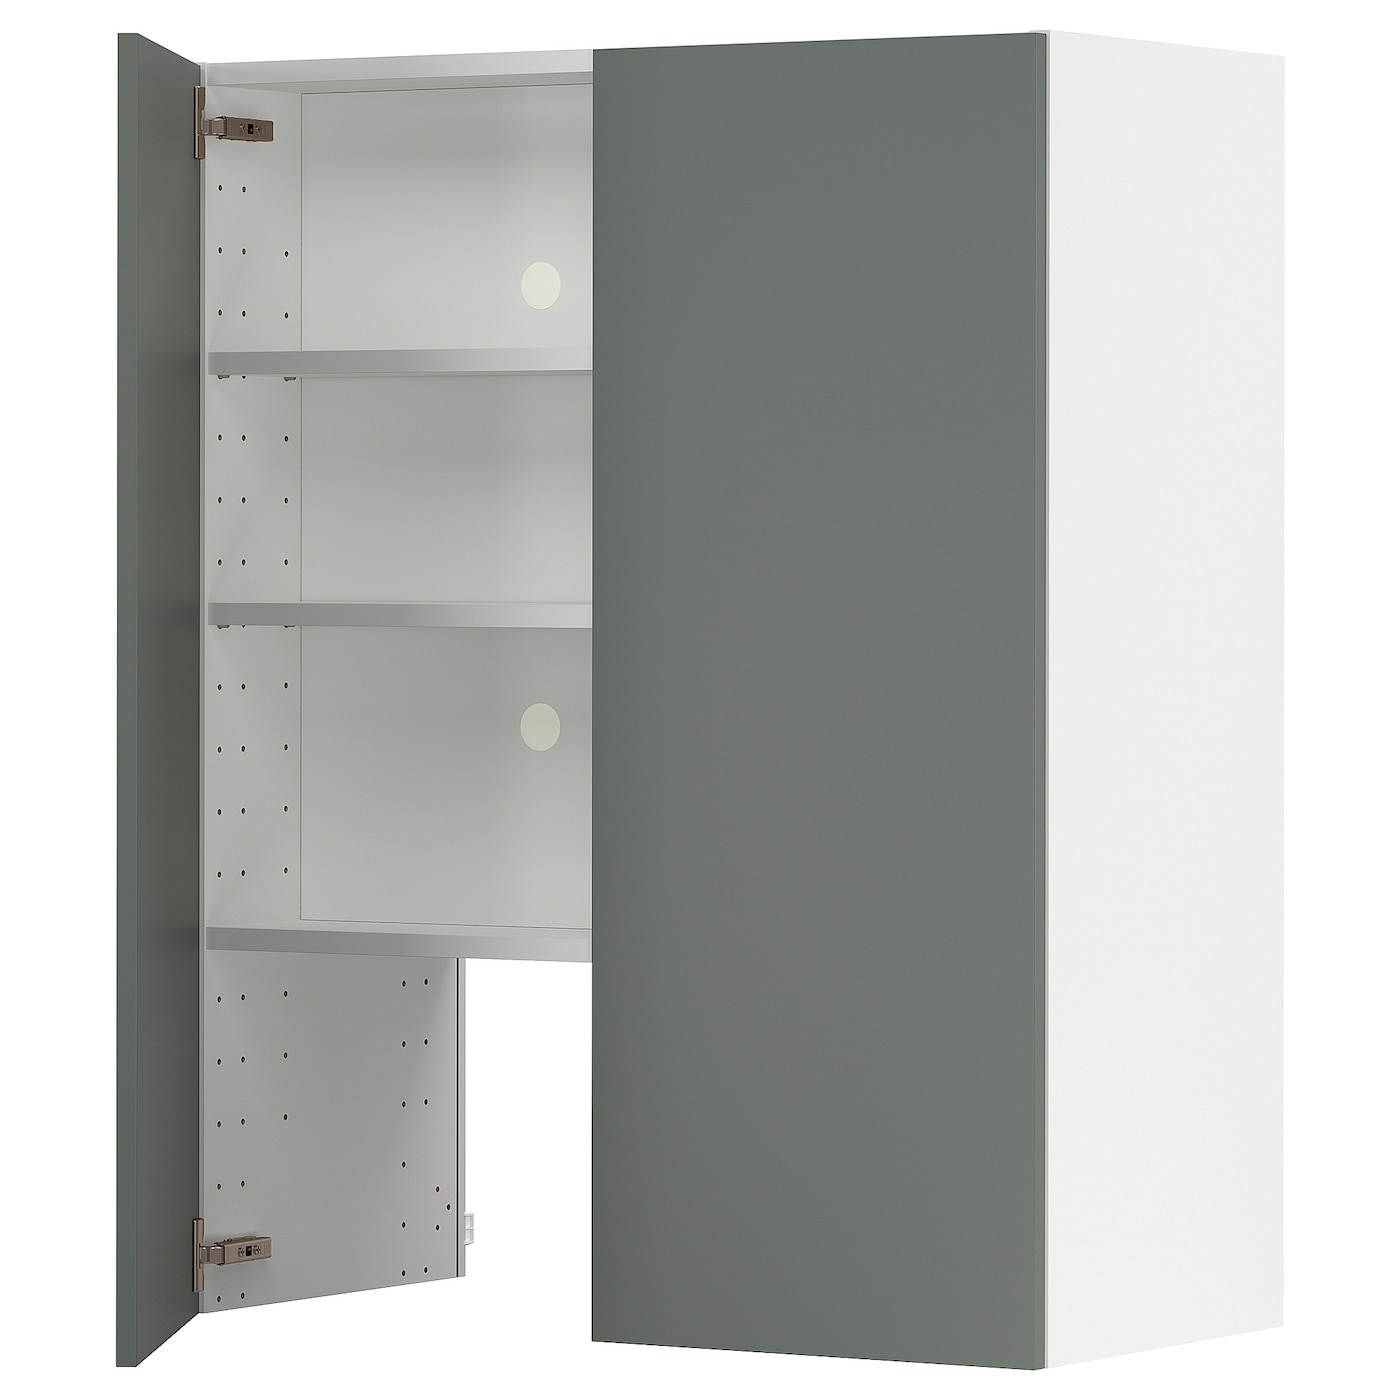 Навесной шкаф с полкой - METOD IKEA/ МЕТОД ИКЕА, 100х80 см, белый/темно-зеленый